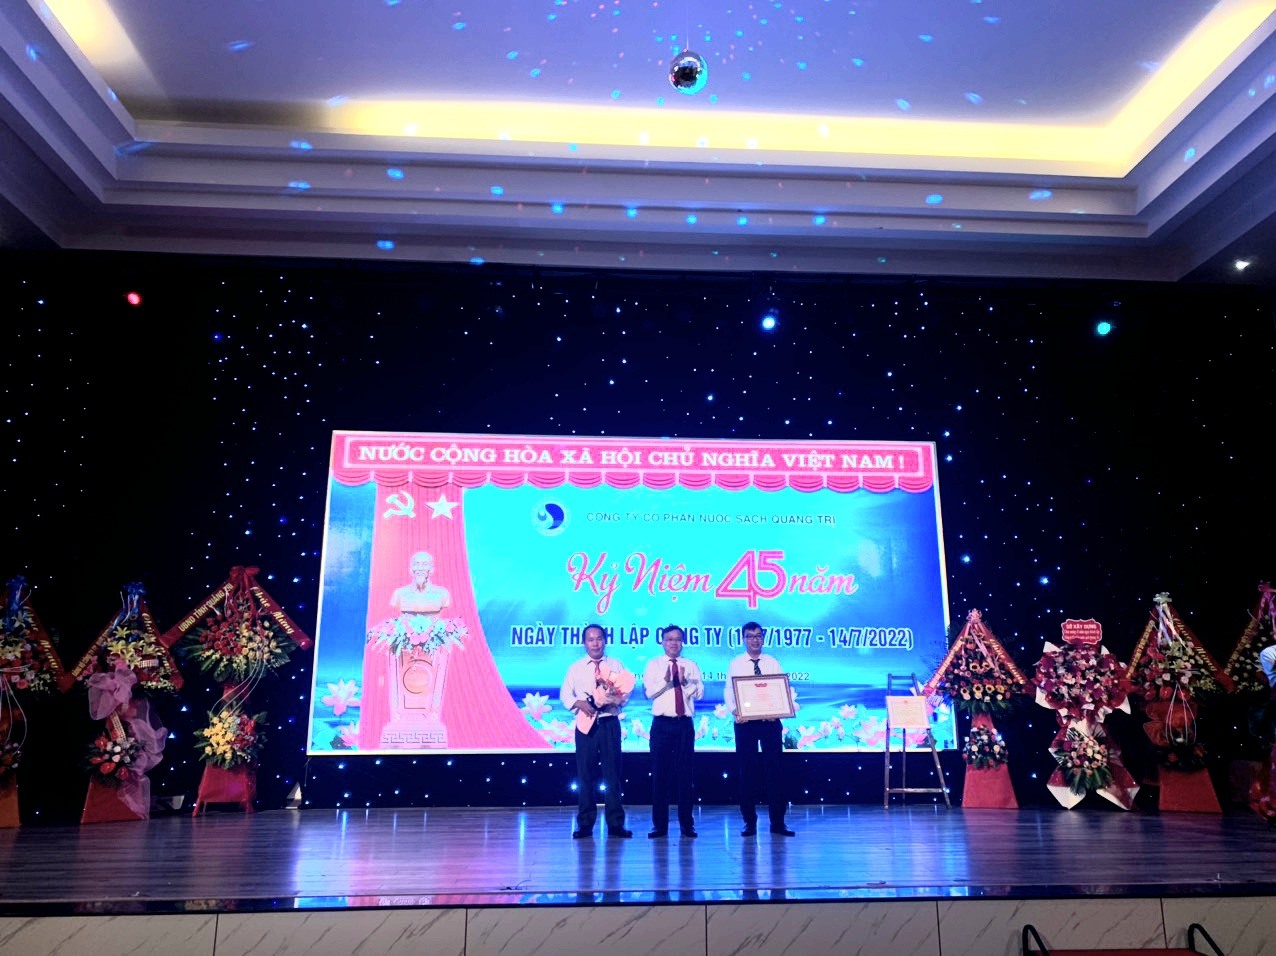 Phó Chủ tịch UBND tỉnh Lê Đức Tiến trao tặng bằng khen của Bộ trưởng Bộ Xây dựng cho Công ty Cổ phần Nước sạch Quảng Trị vì đã có thành tích xuất sắc trong các phong trào thi đua yêu nước của ngành xây dựng năm 2021 - Ảnh: H.T